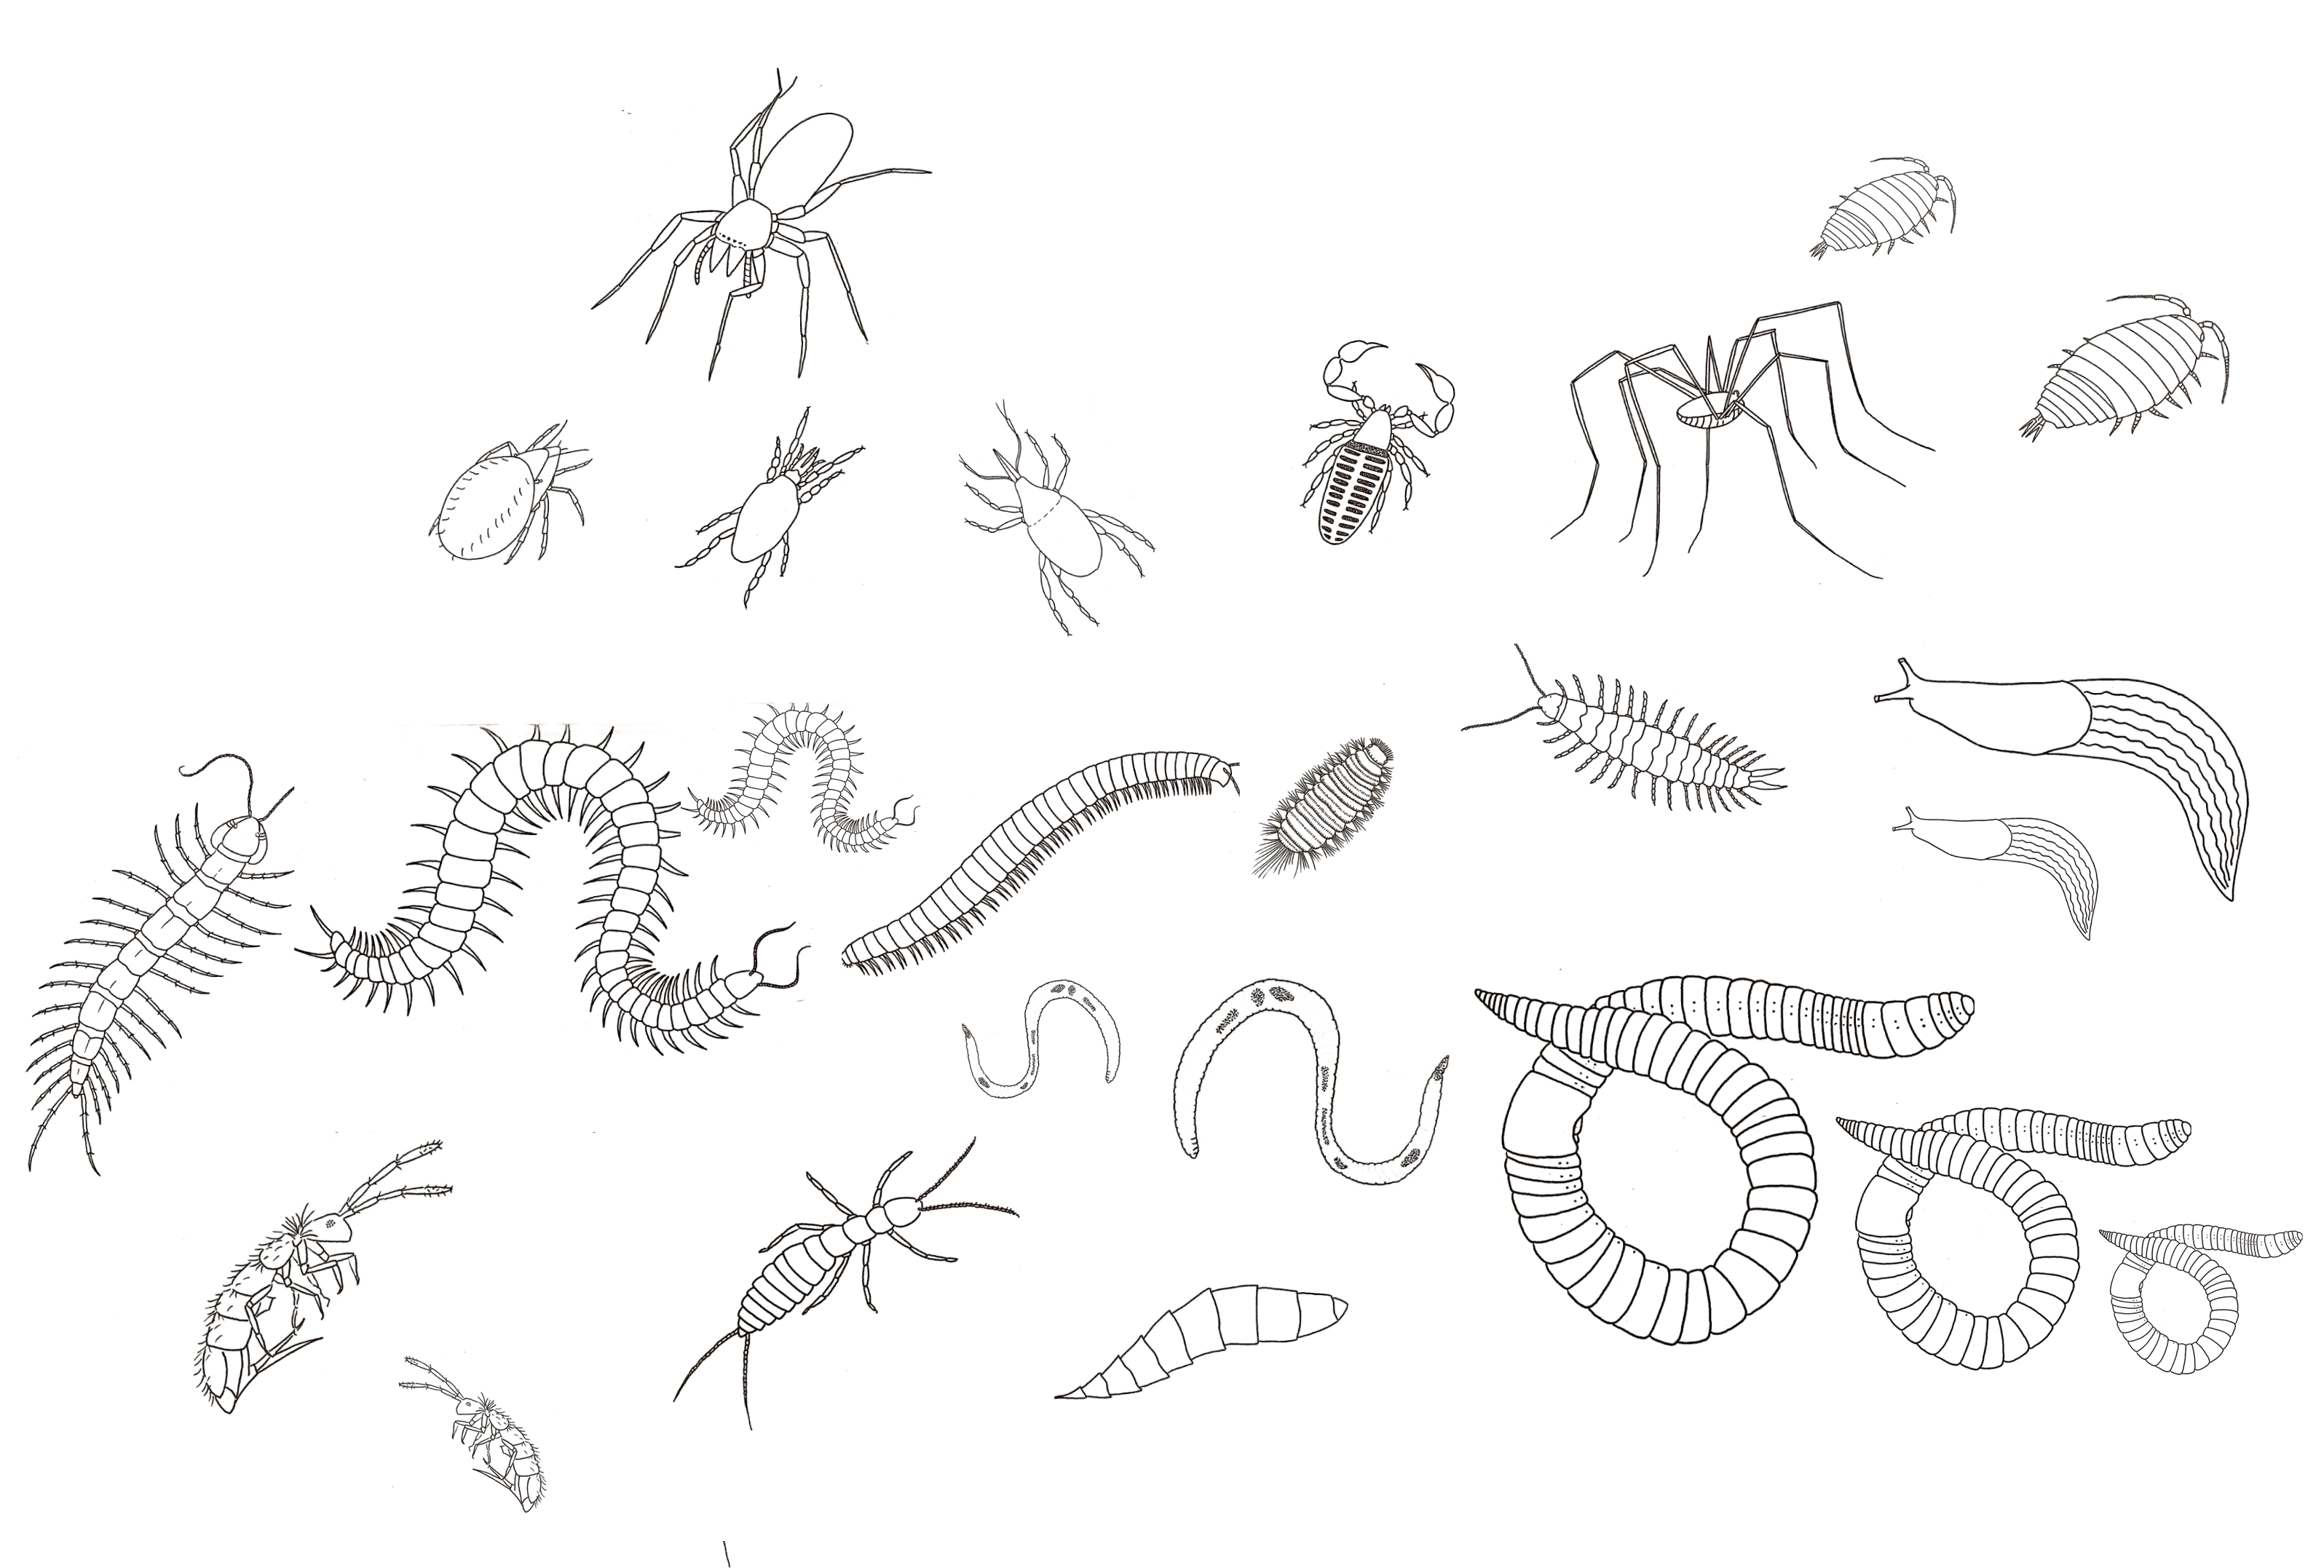 Dibujos lineales de una variedad de animales del suelo. Muchos de ellos tienen cuerpos segmentados y apéndices articulados.